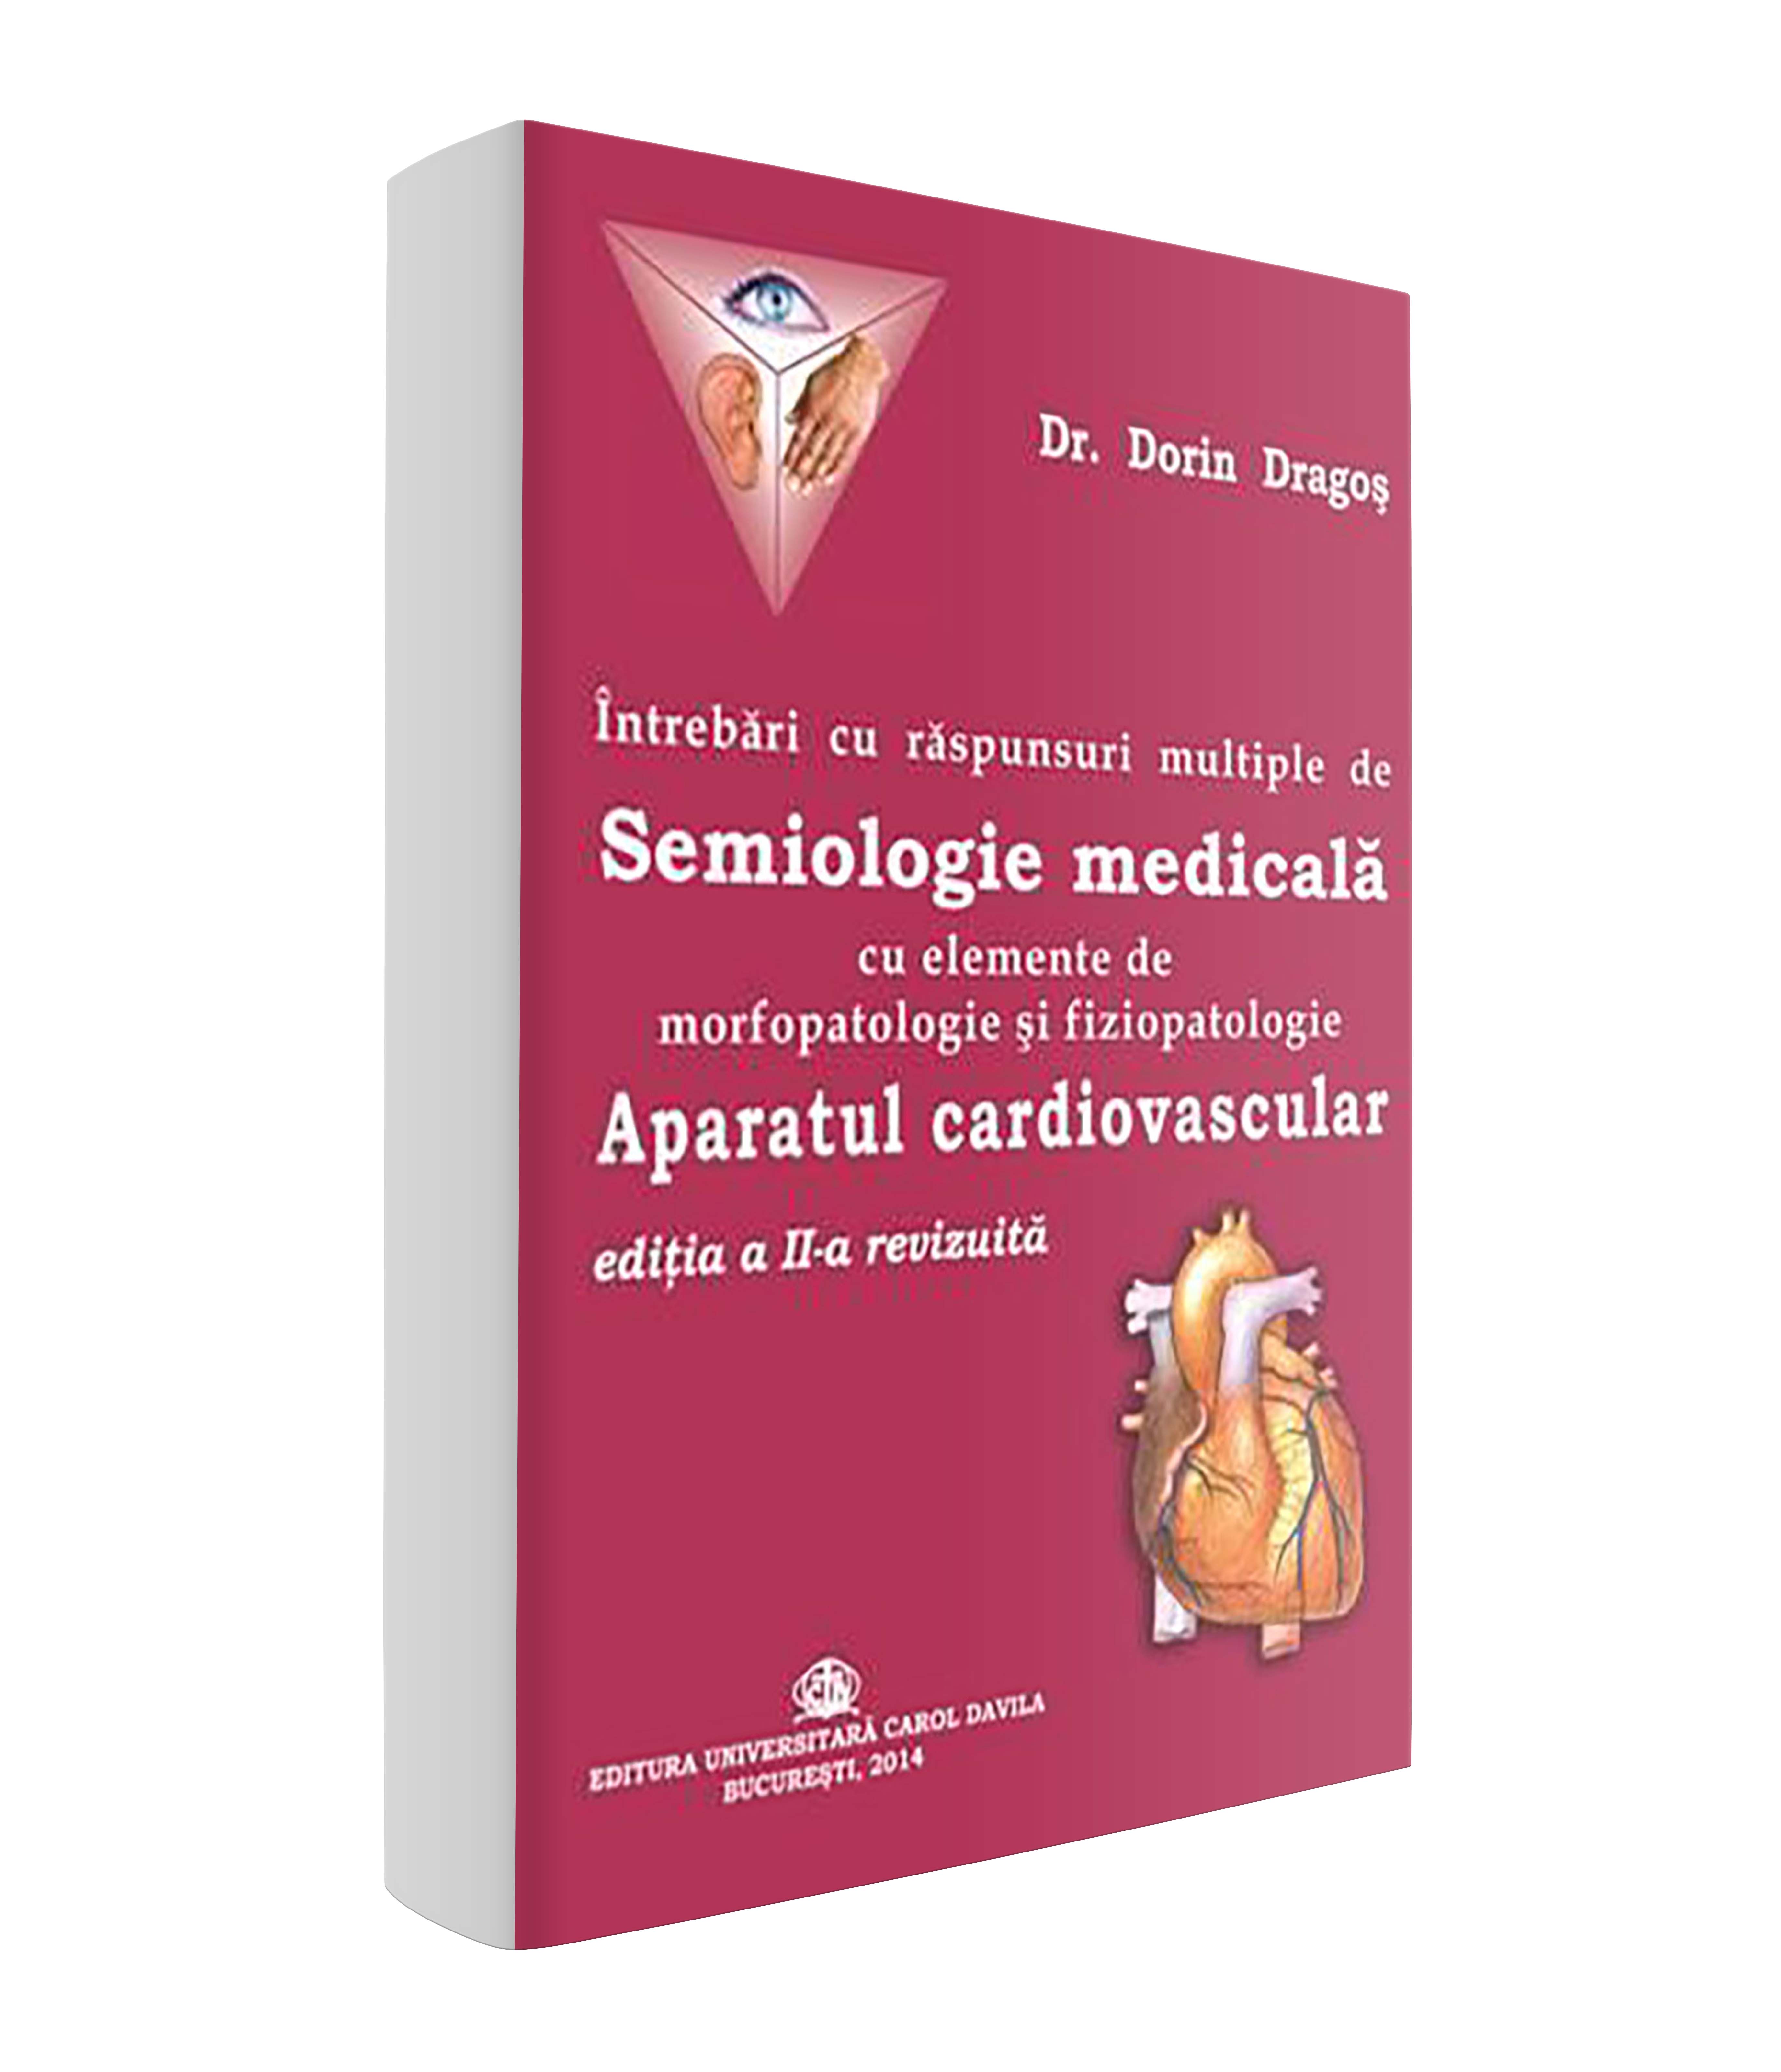 <p>Întrebări cu răspunsuri multiple de Semiologie medicală cu elemente de morfopatologie şi fiziopatologie</p> <p> Aparatul cardiovascular</p>